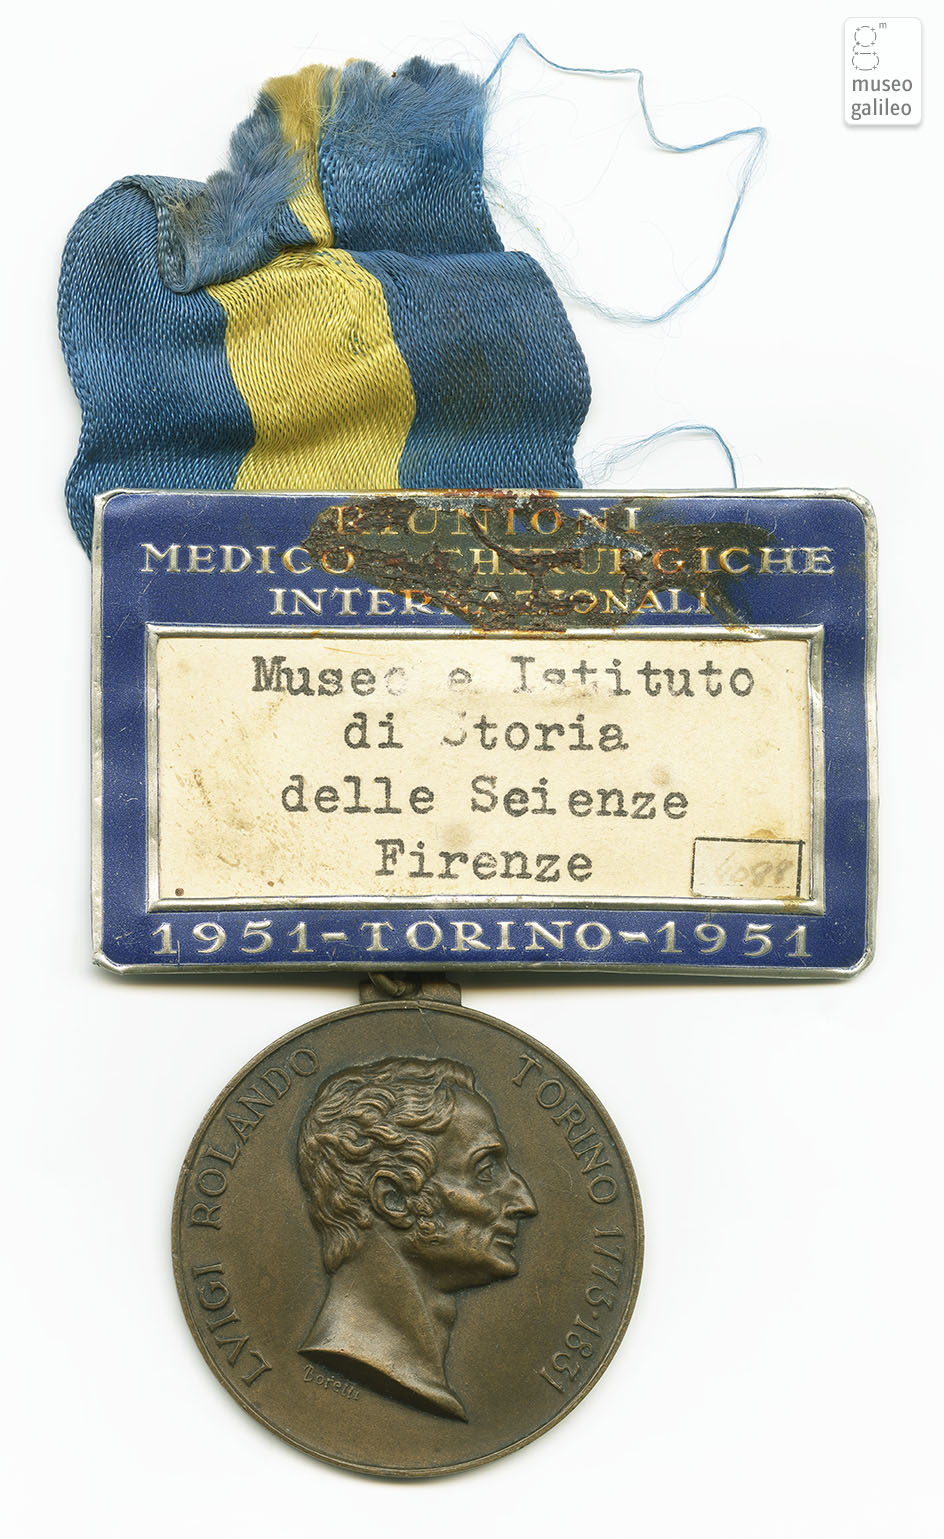 Riunioni Medico Chirurgiche Internazionali (Torino, 1951) - diritto